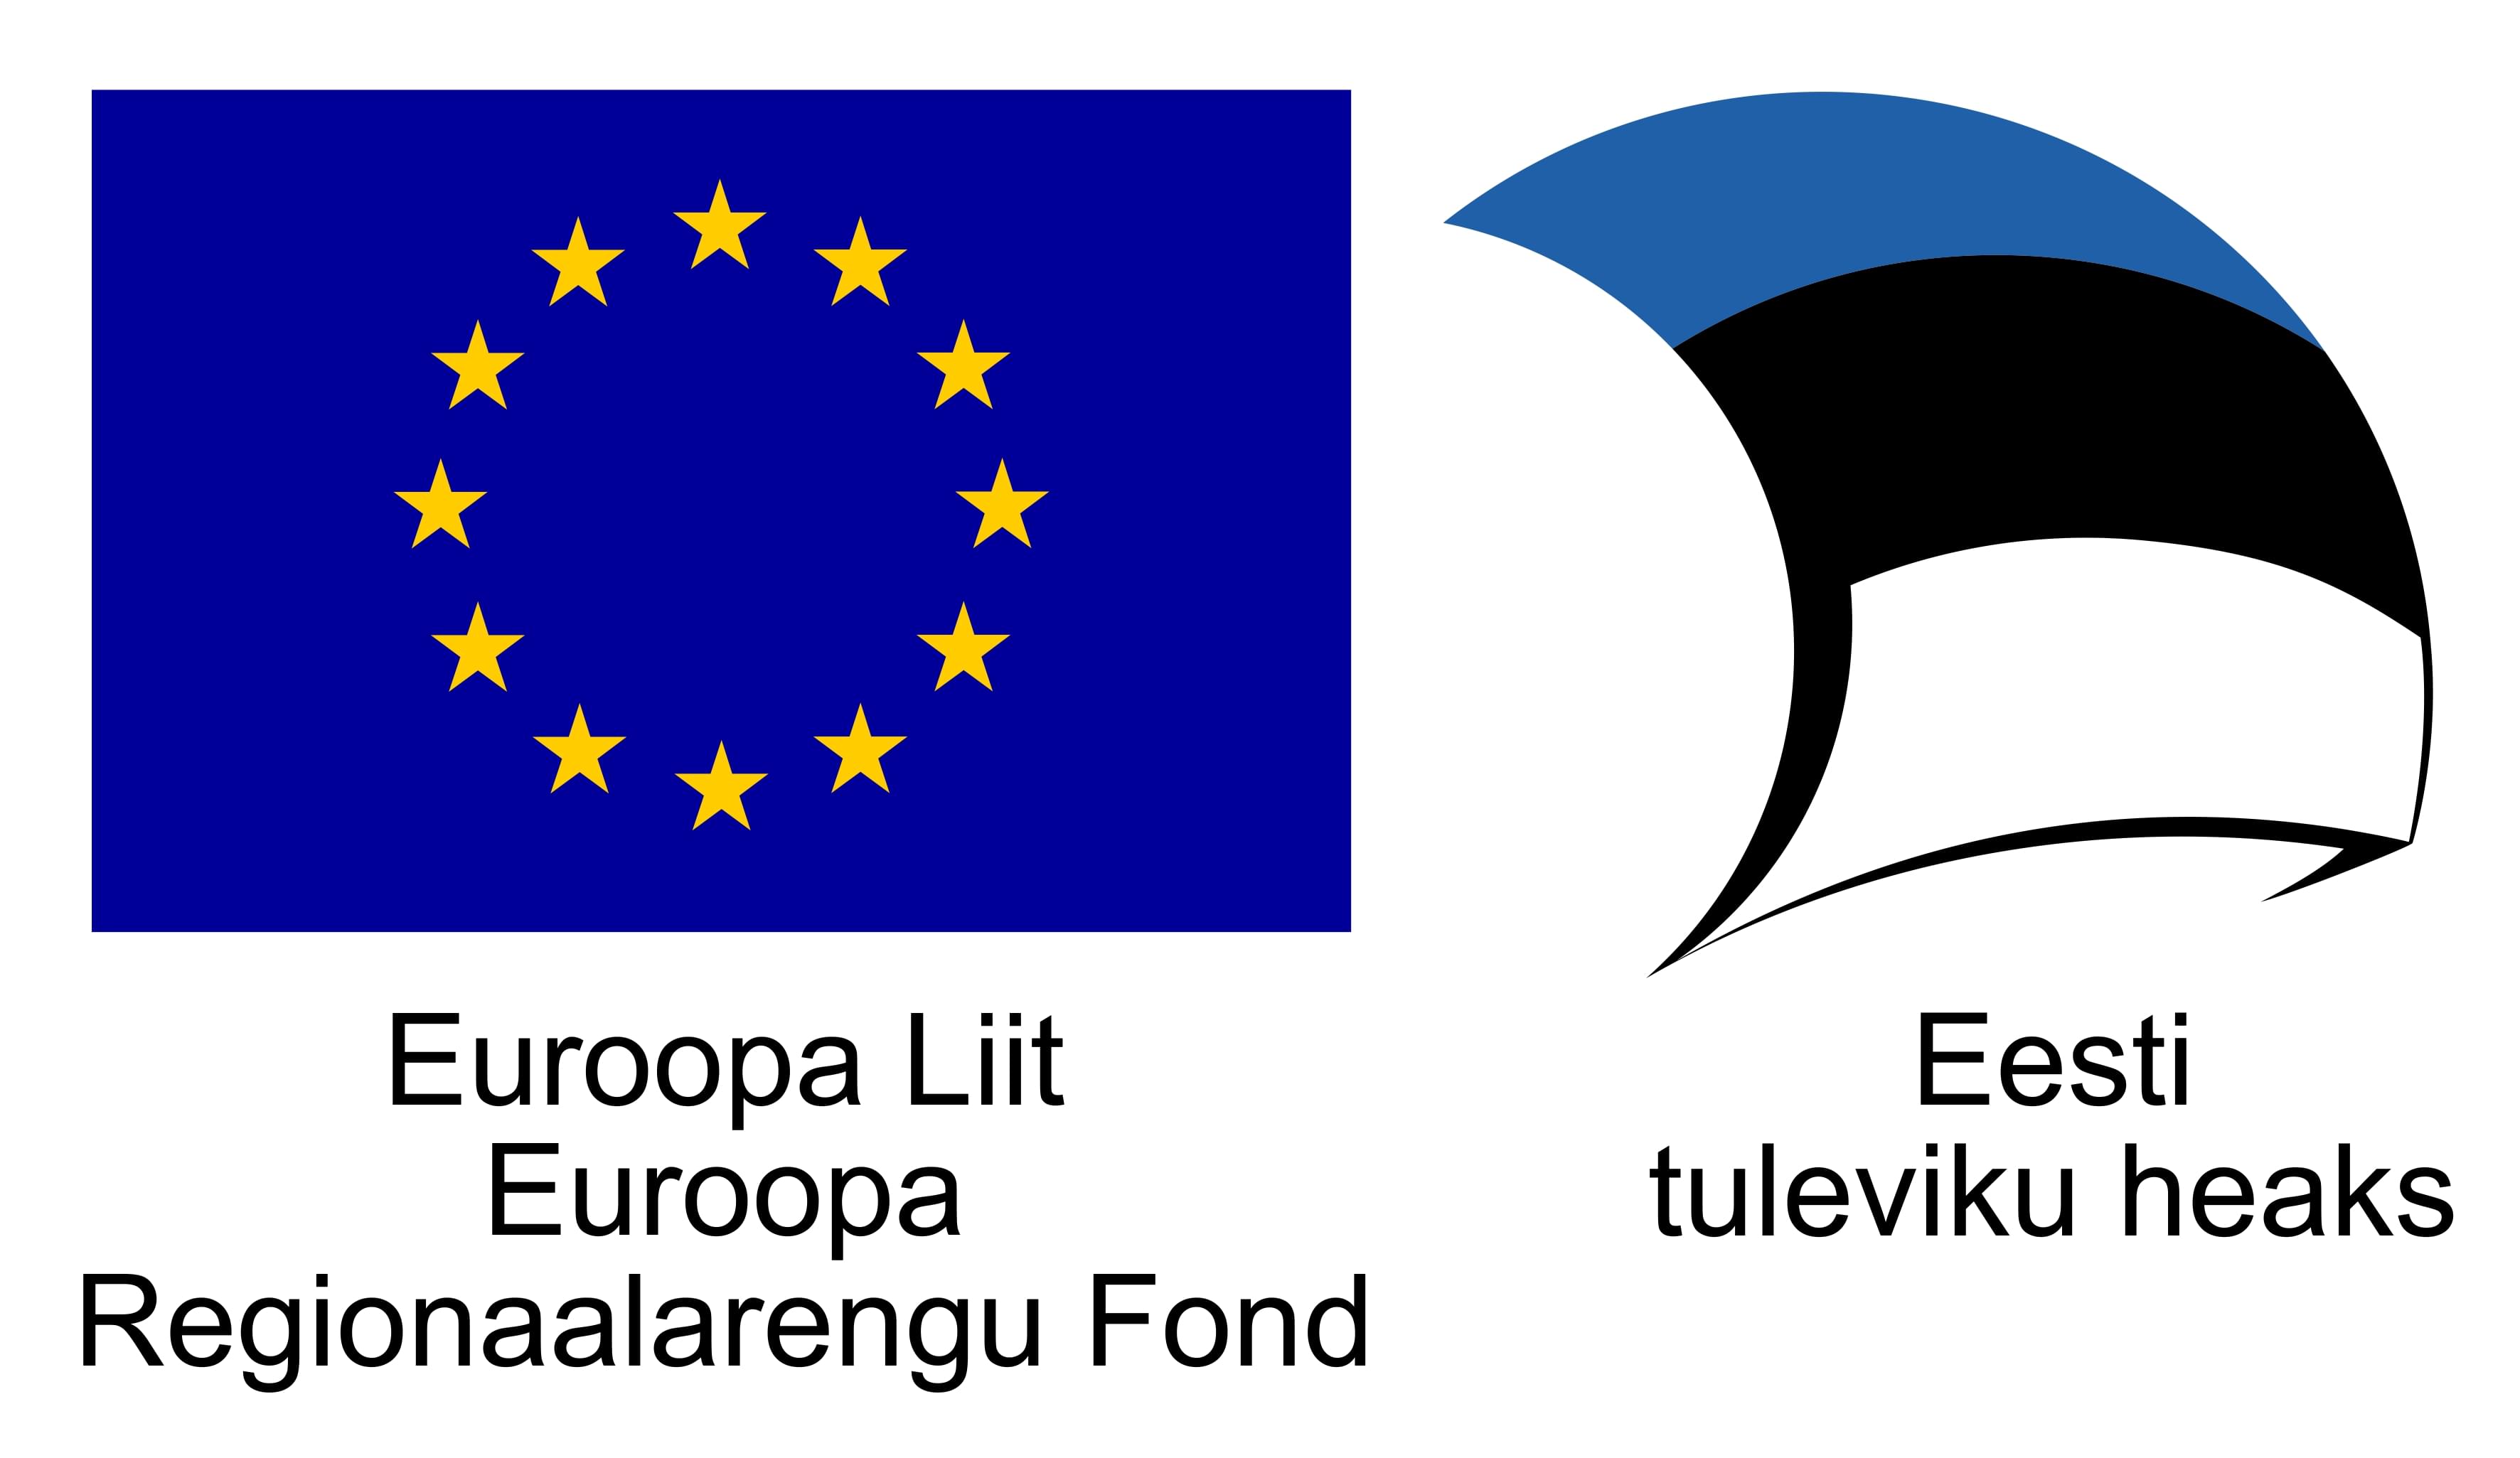 Euroopa Liit, Euroopa Regionaalarengu Fond, Eesti tuleviku heaks